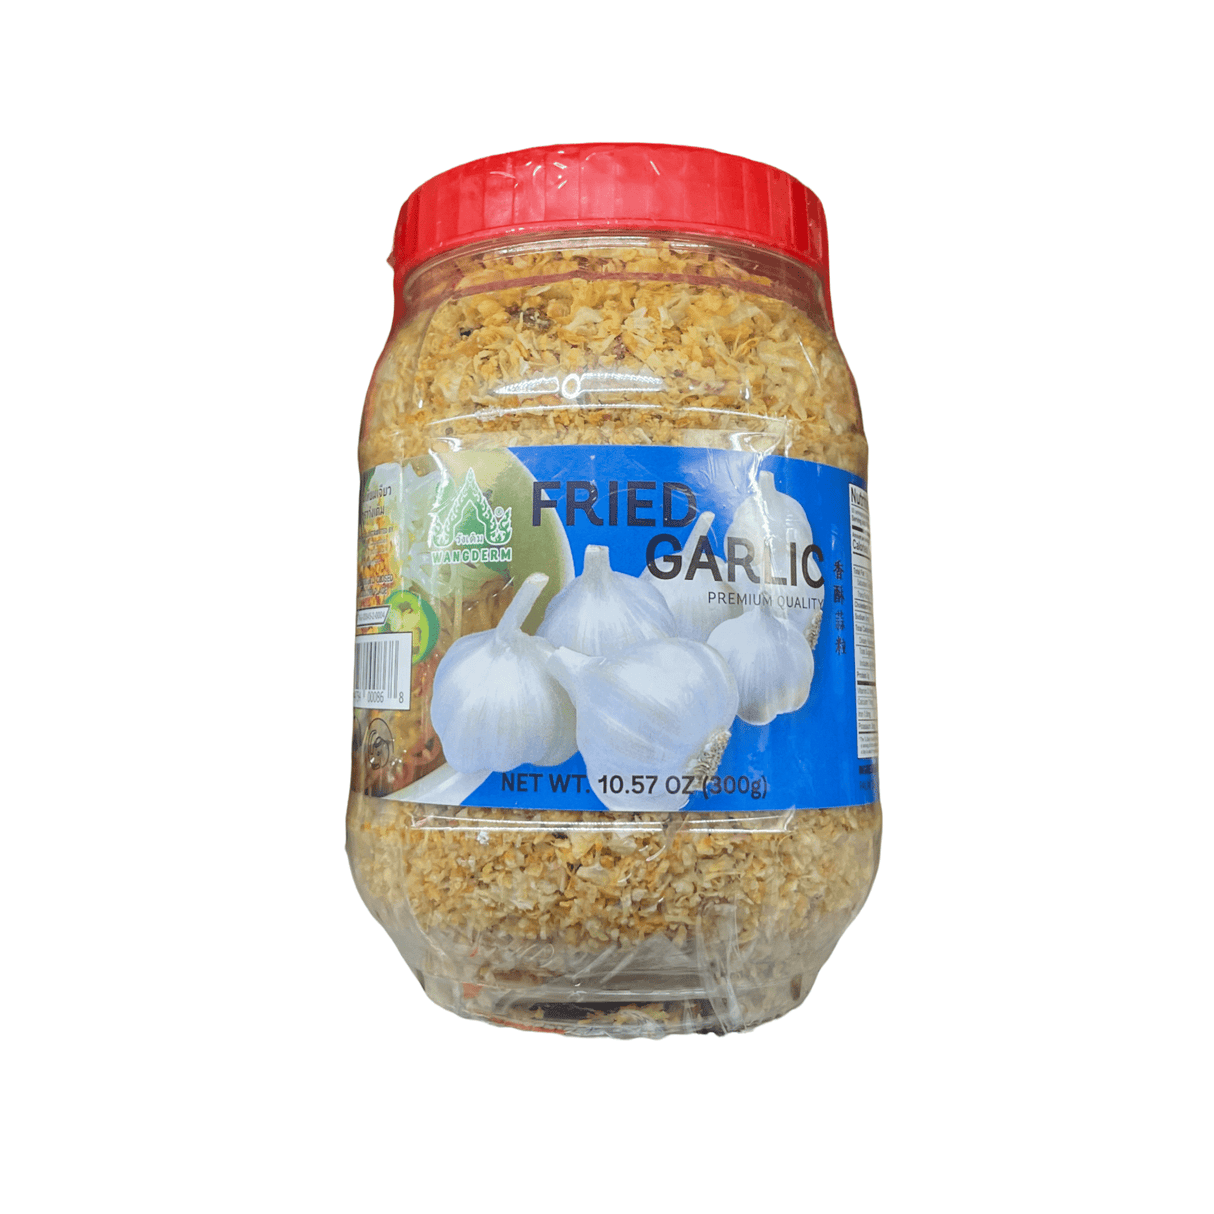 Wangderm Brand Fried Garlic Premium Quality